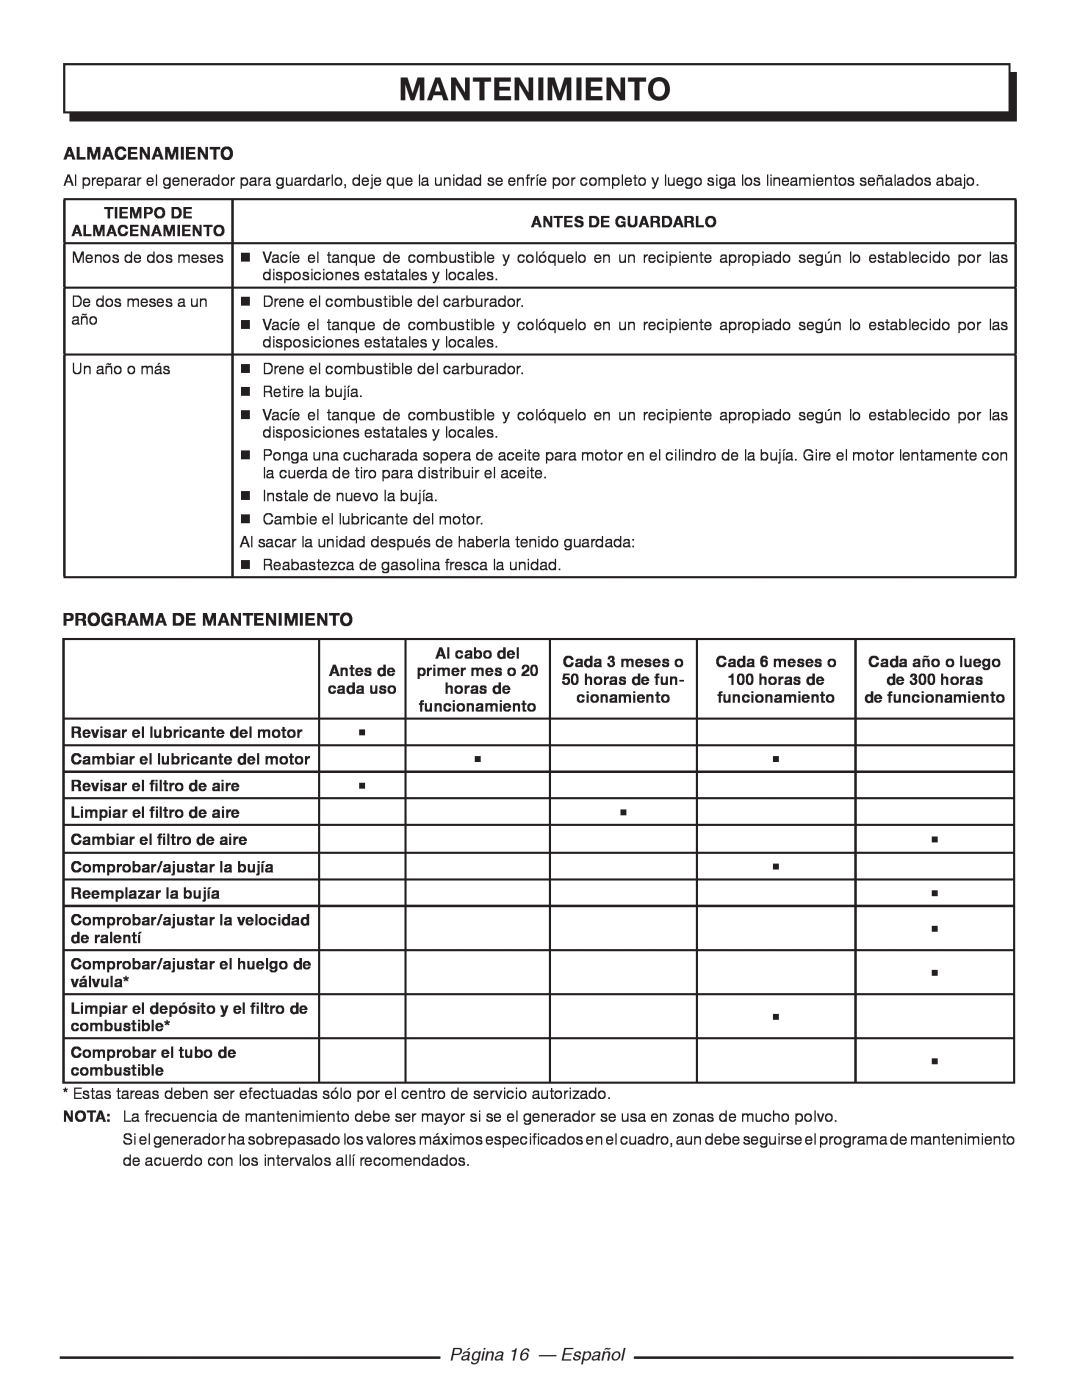 Homelite HG5000 manuel dutilisation almacenamiento, Programa De Mantenimiento, Página 16 — Español 